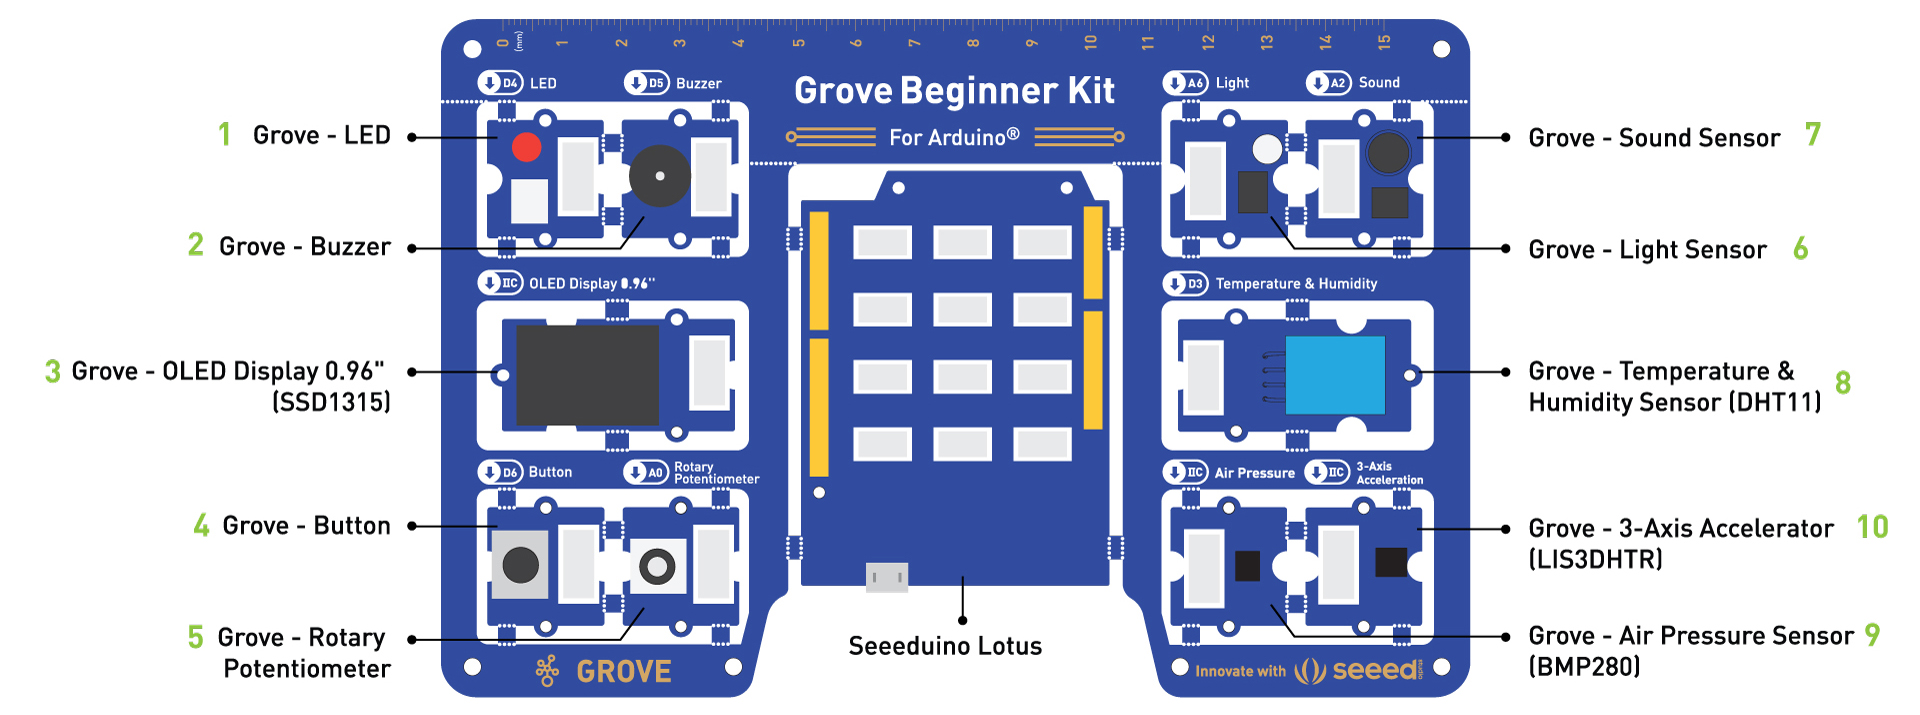 Grove Beginner Kit für Arduino All-in-One kompatibles Board - Zum Vergrößern klicken